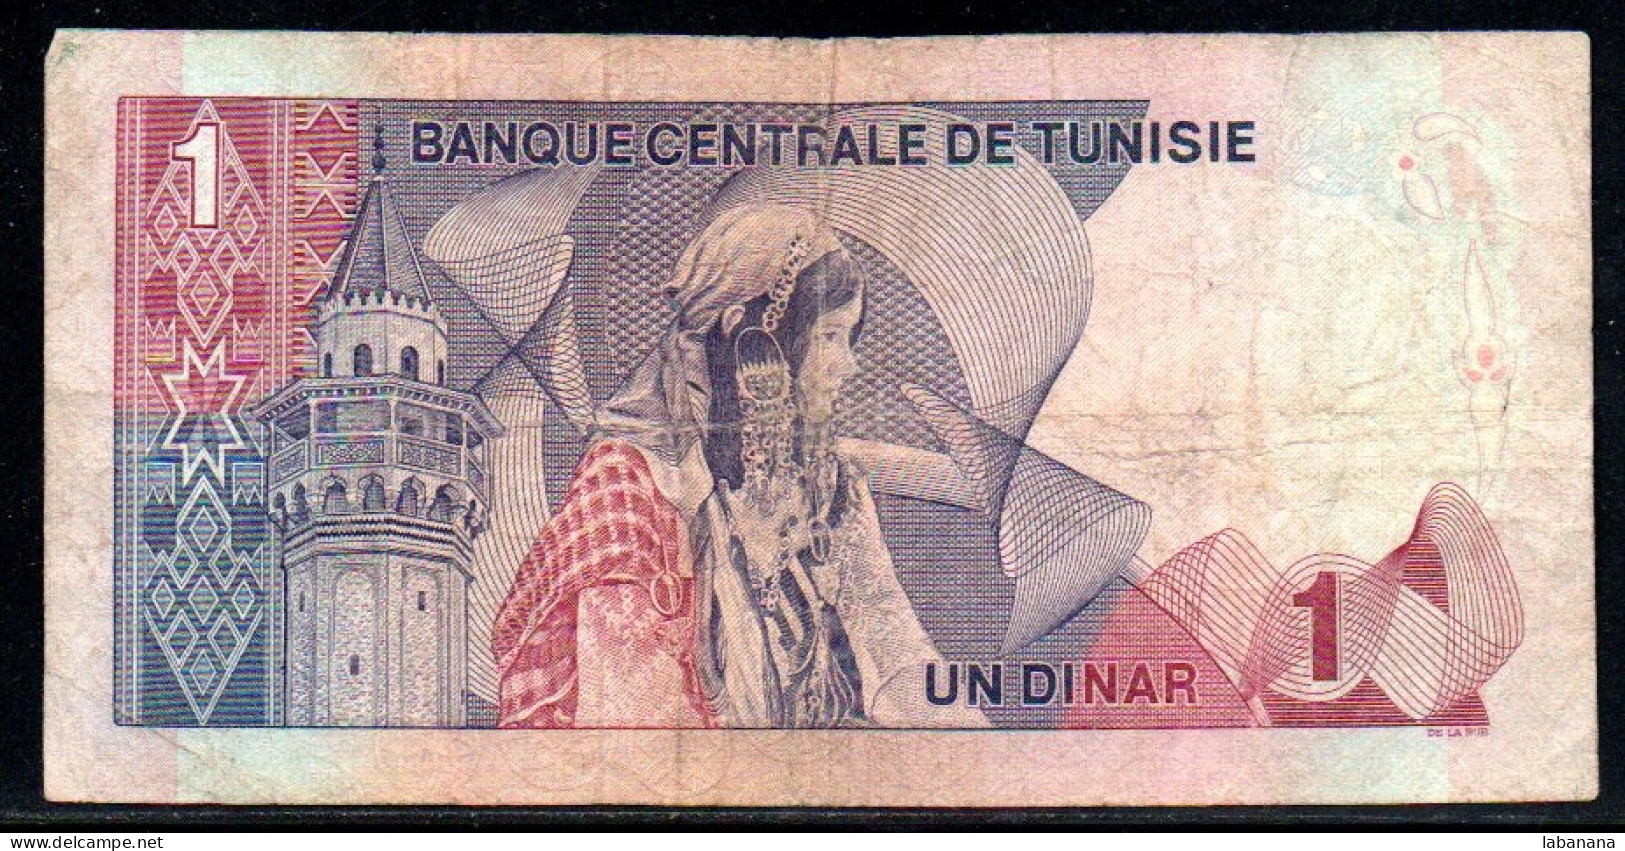 624-Tunisie 1 Dinar 1972 B18 - Tunisia